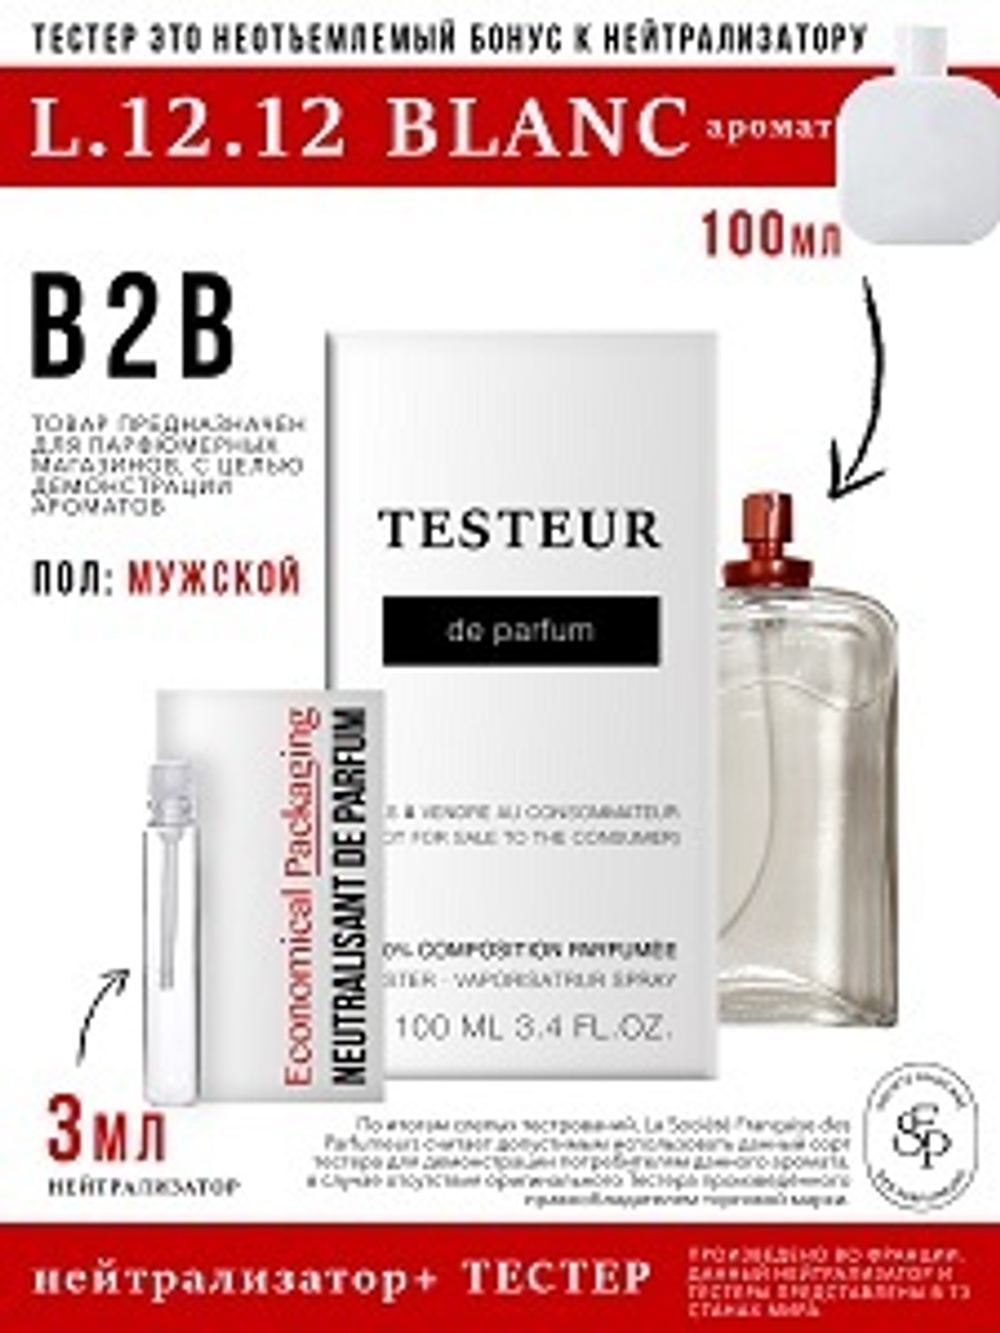 Нейтрализатор аромата 3мл + БОНУС ТЕСТЕР L.12.12 Blanc, мужской, 100мл